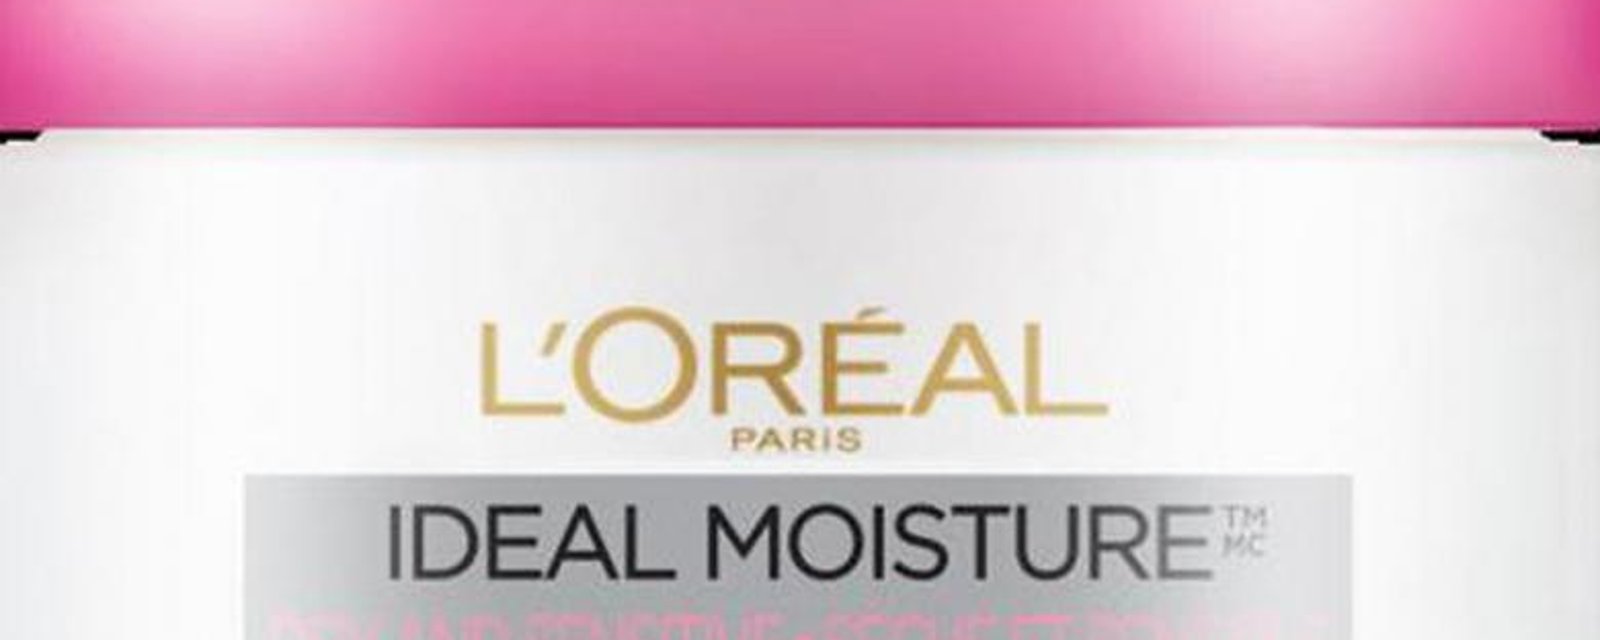 L'Oréal rappelle une crème très populaire qui pourrait causer des allergies et des irritations.